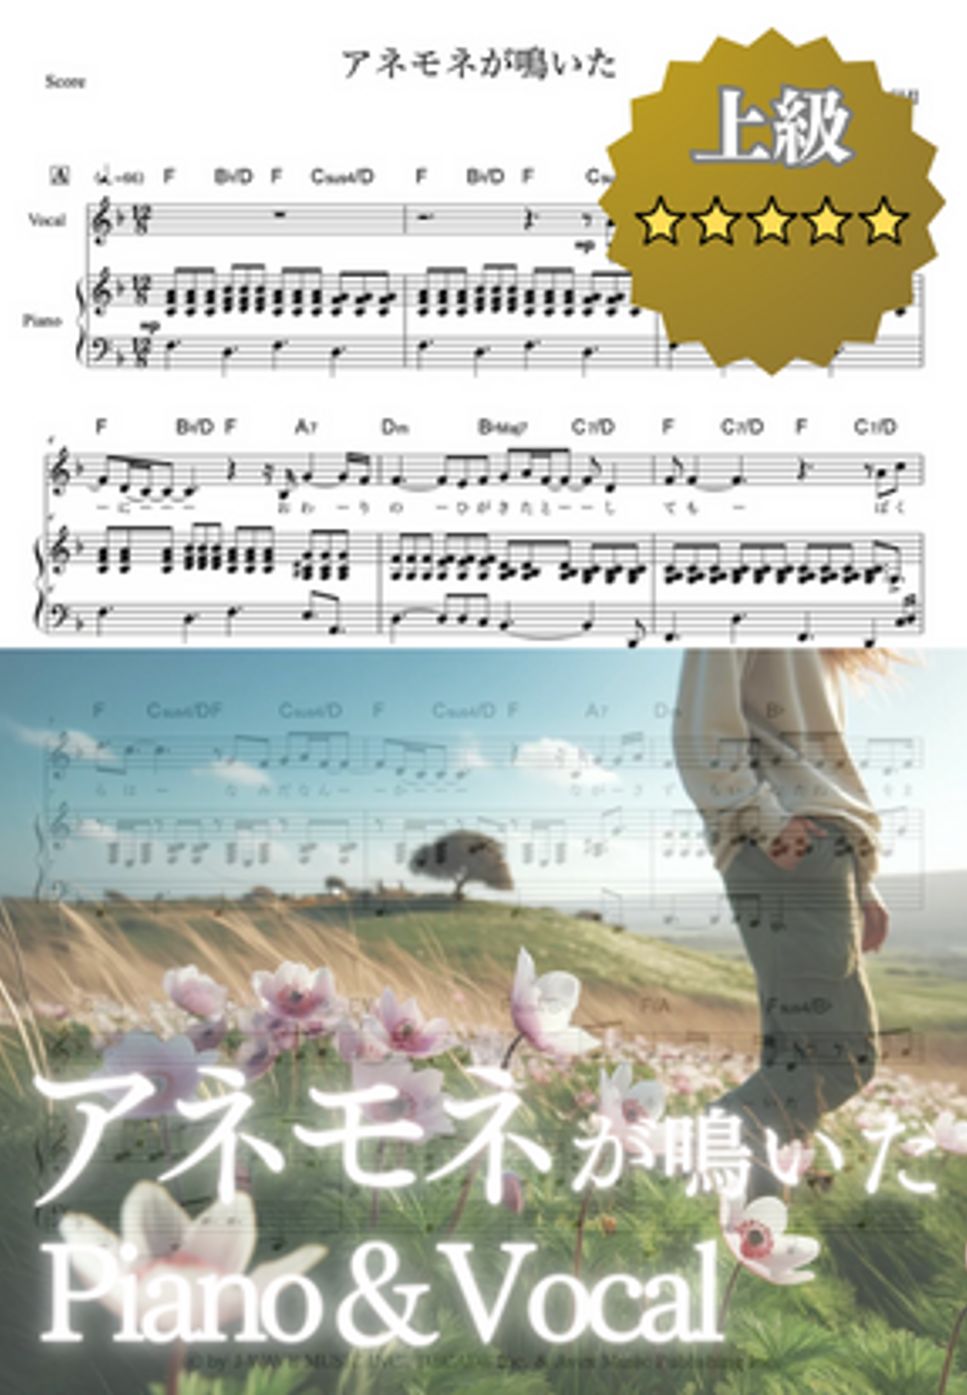 大橋トリオ - アネモネが鳴いた (ピアノ/ヴォーカル/弾き語り) by cogito